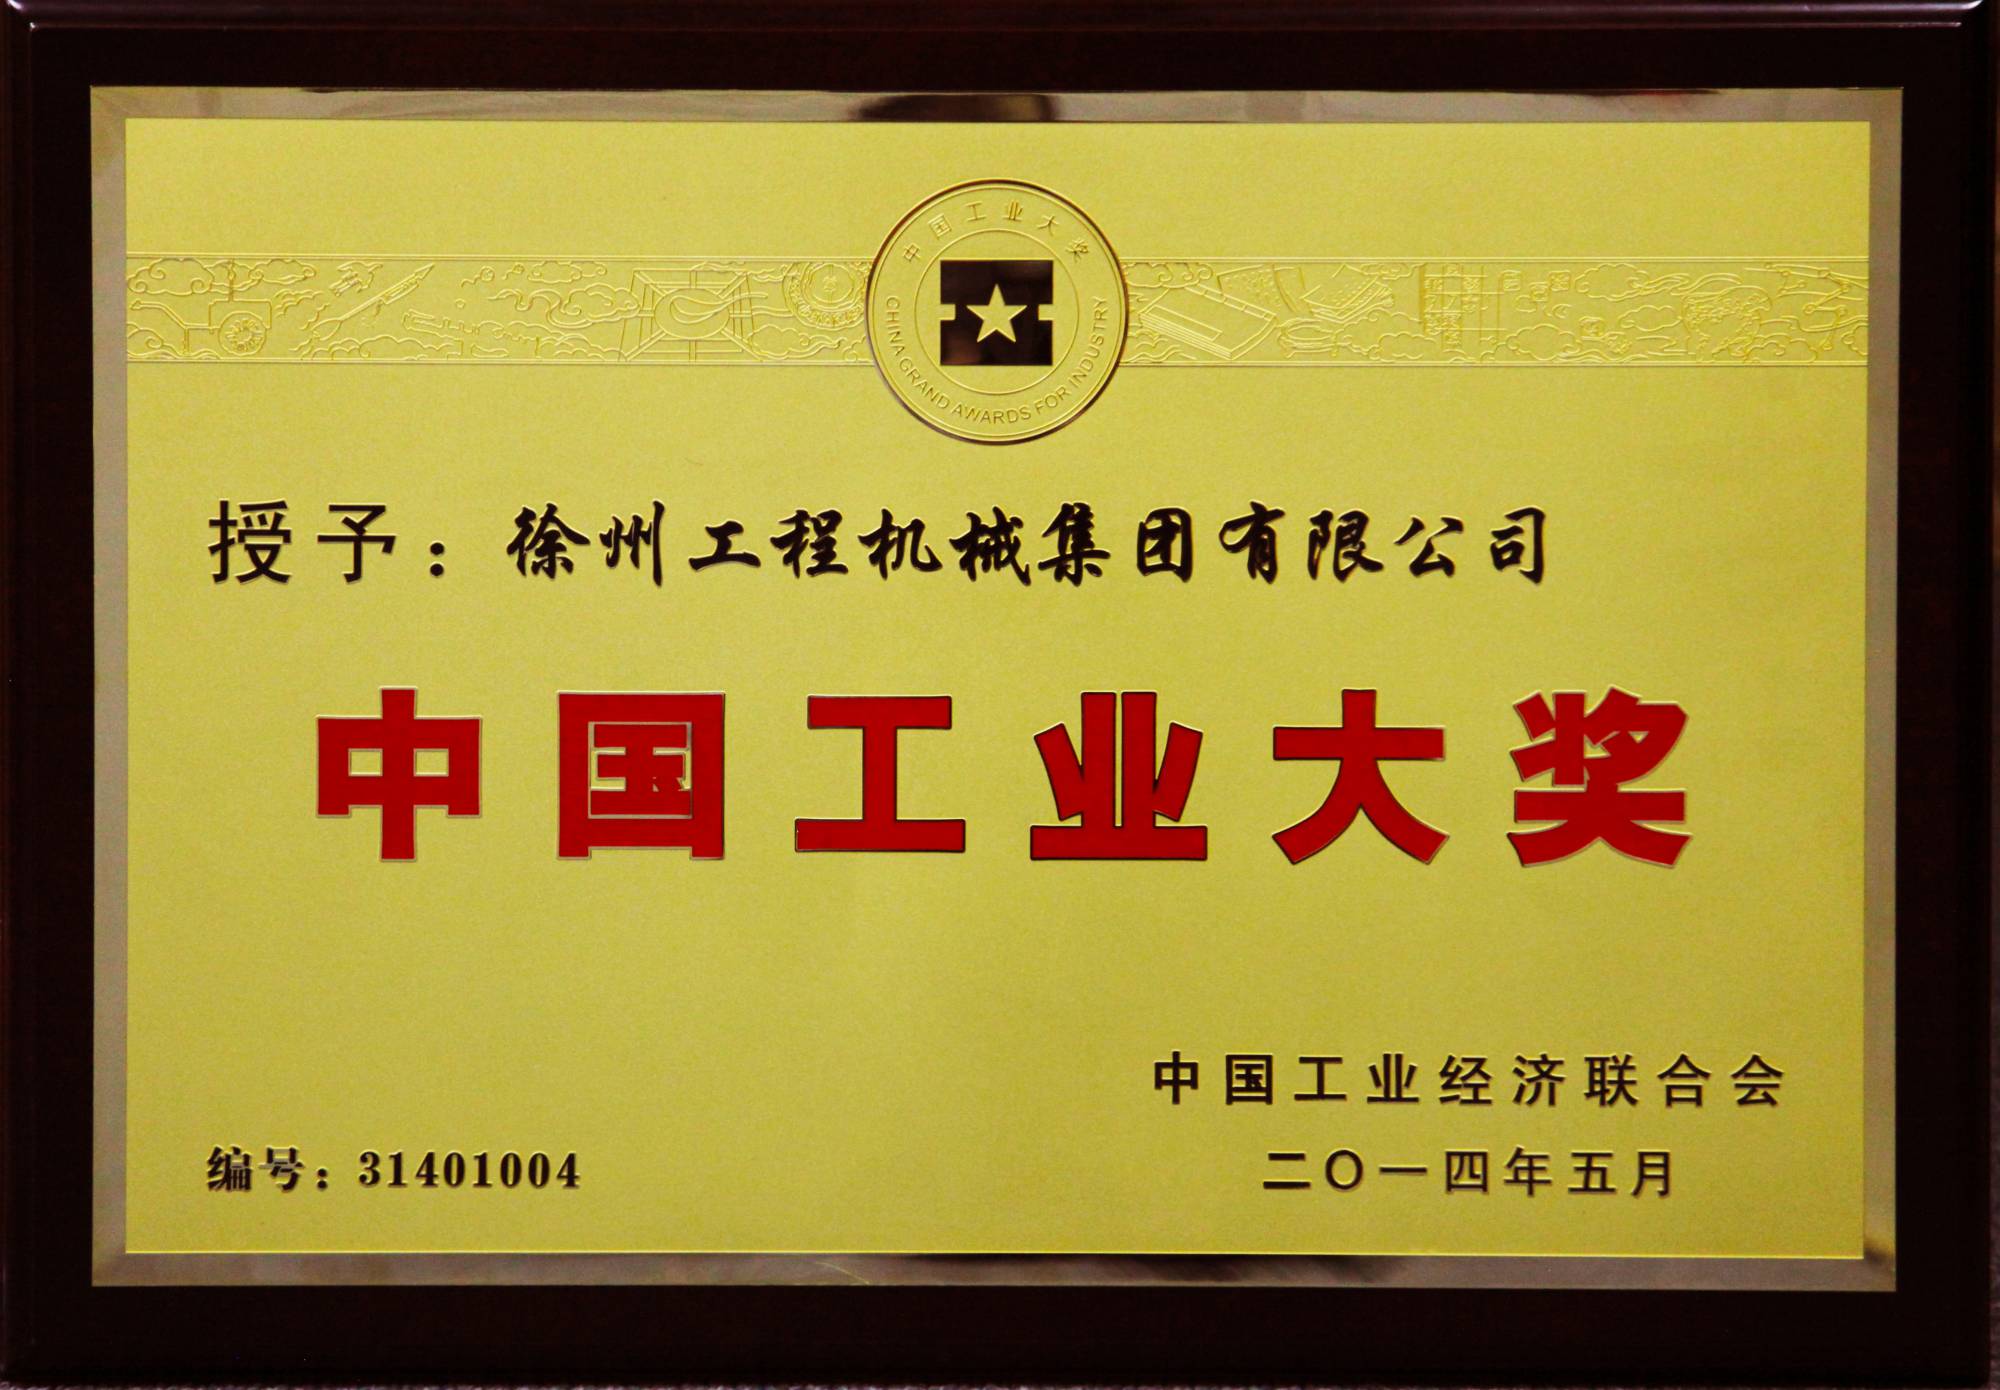 徐工荣膺行业唯一的中国工业领域最高奖项——中国工业大奖